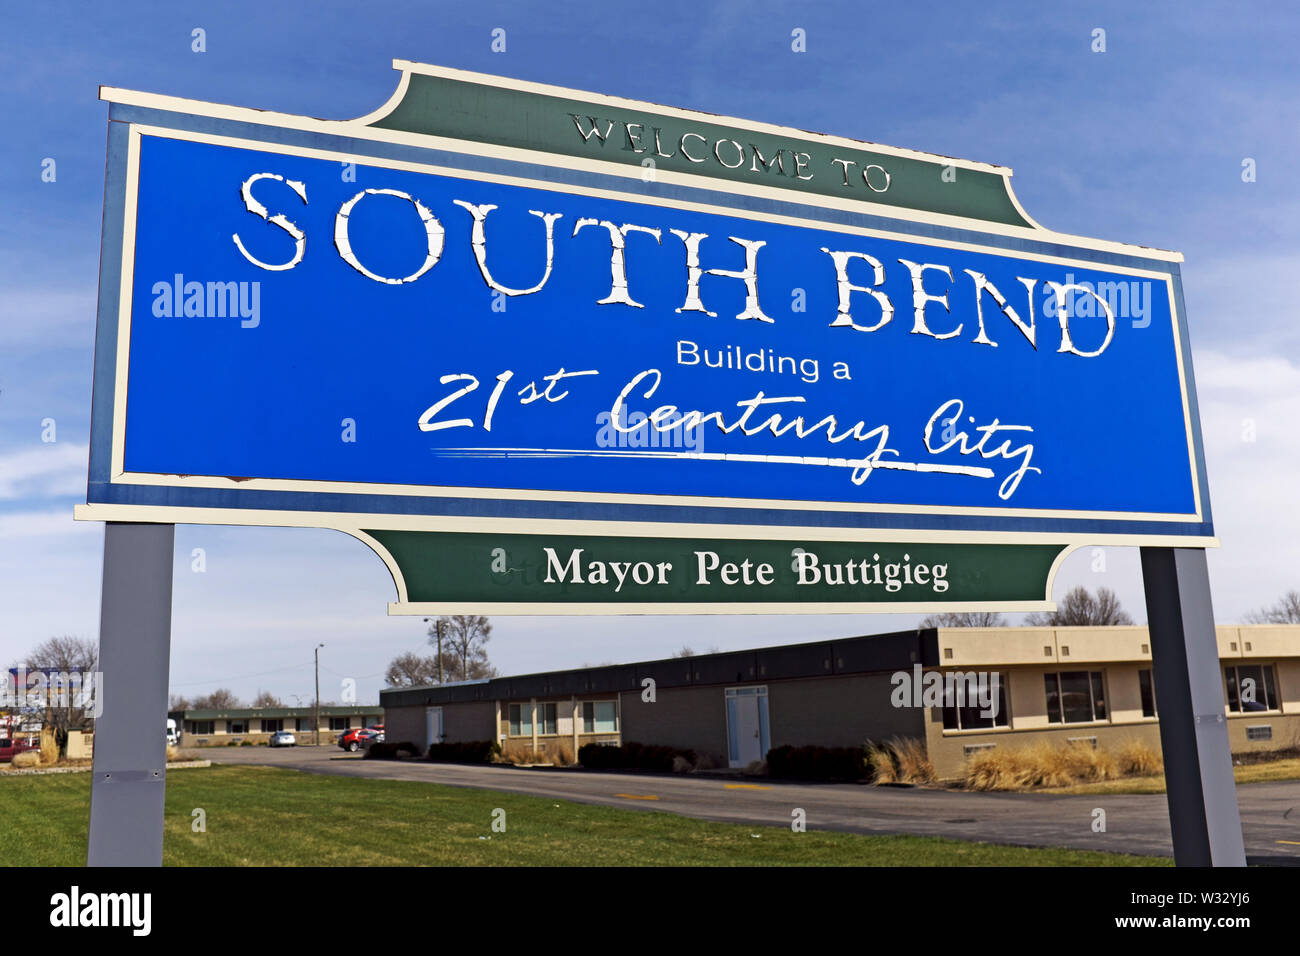 Die 'Willkommen in South Bend Gebäude des 21. Jahrhunderts Stadt'-Schild mit den Namen der Oberbürgermeister, Bürgermeister Peter Buttigieg, darunter. Stockfoto